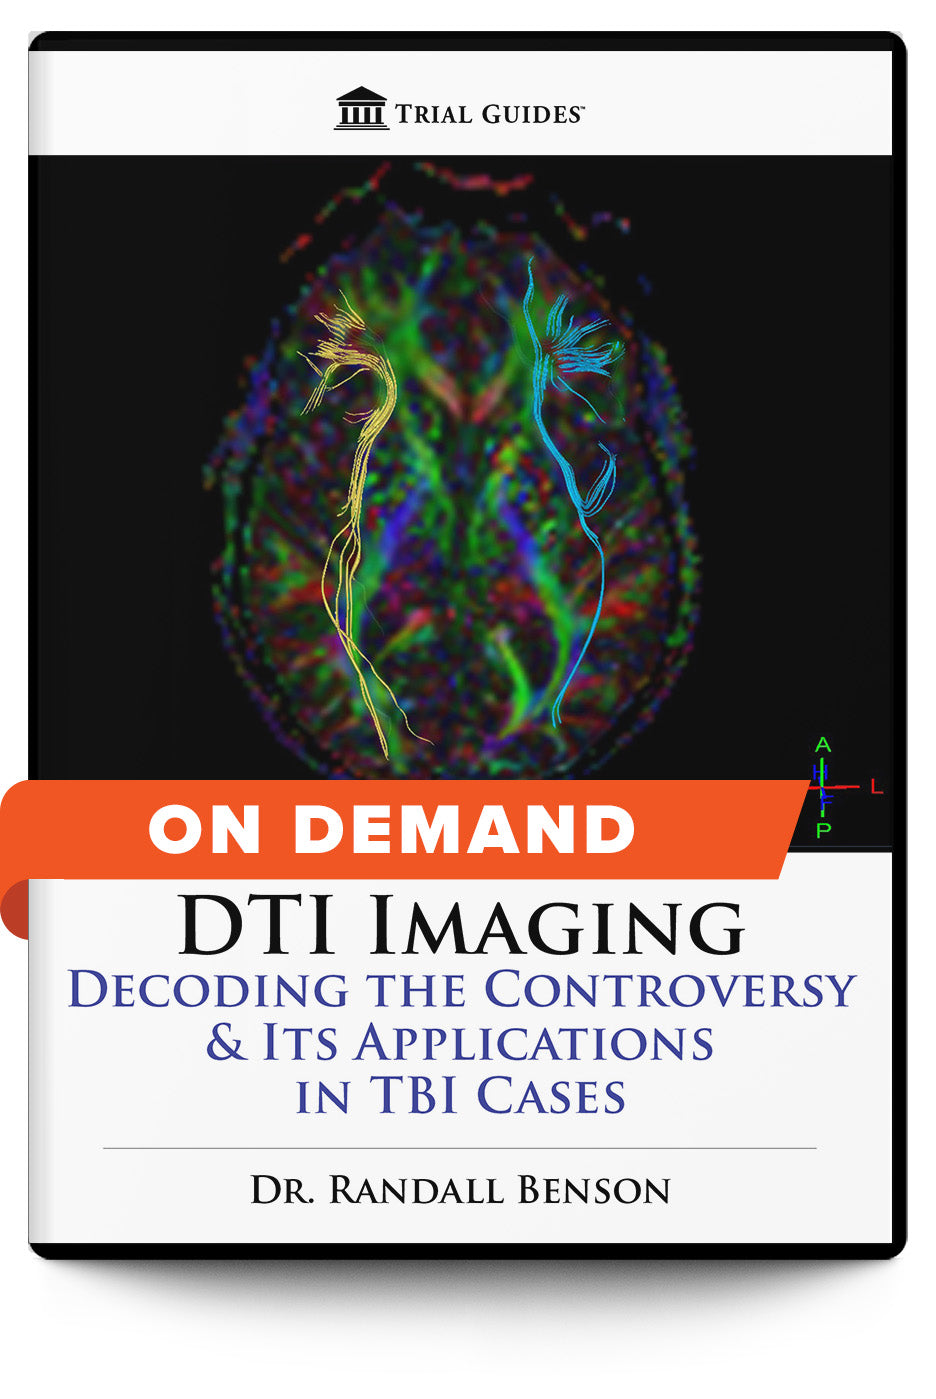 Diffusion Tensor Imaging in Traumatic Brain Injury